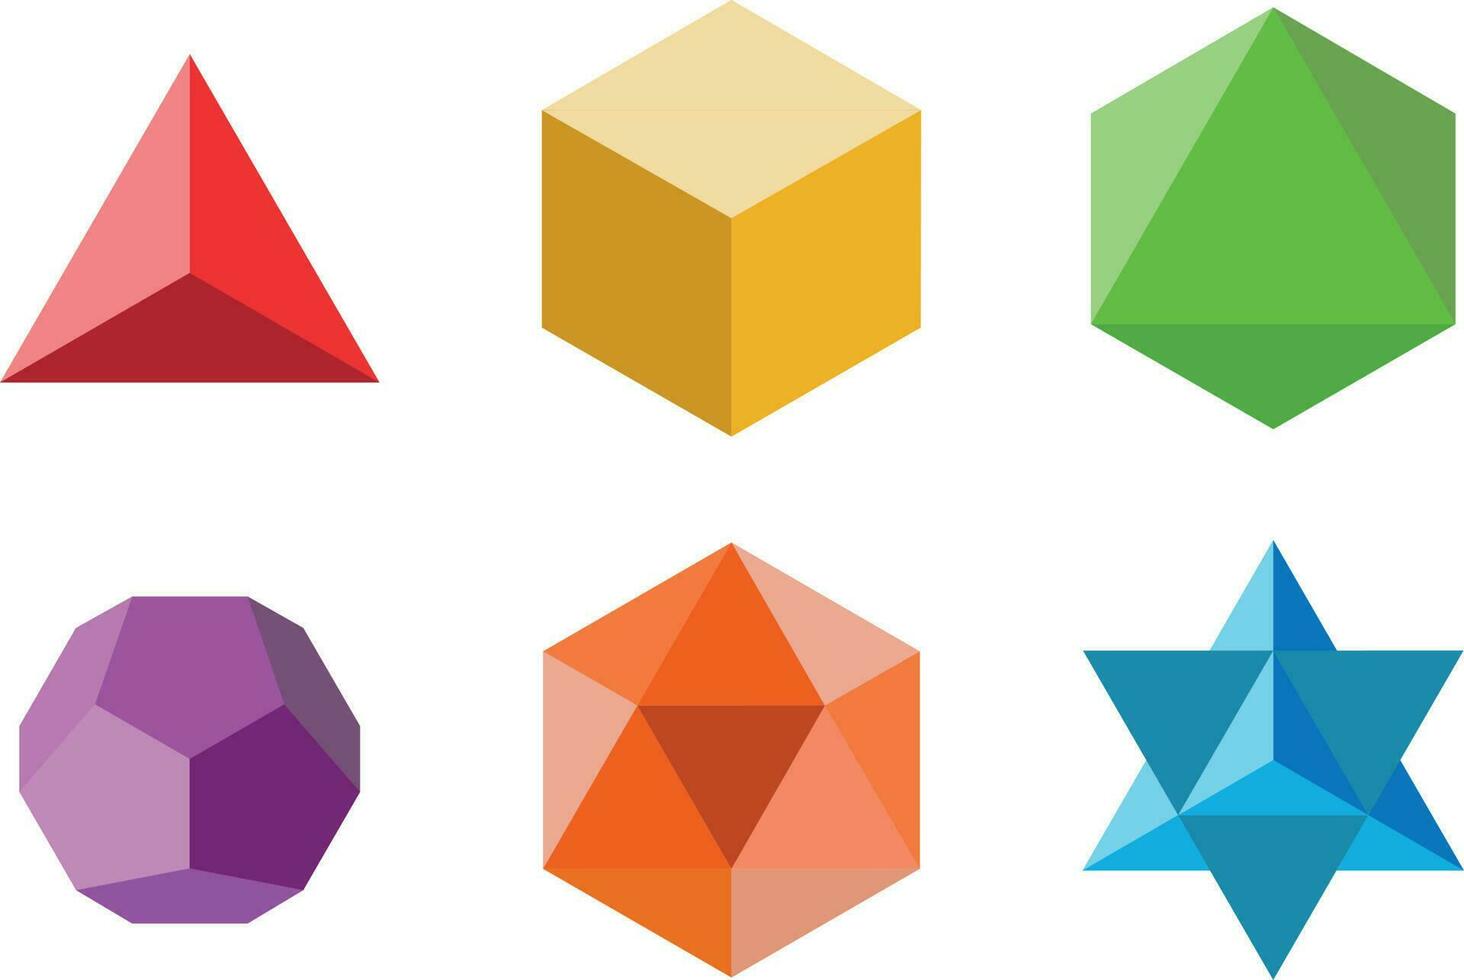 uppsättning av geometrisk element och former. pyramid, kub, oktaeder, dodekaeder, ikosaeder och davids stjärna. helig geometri vektor mönster